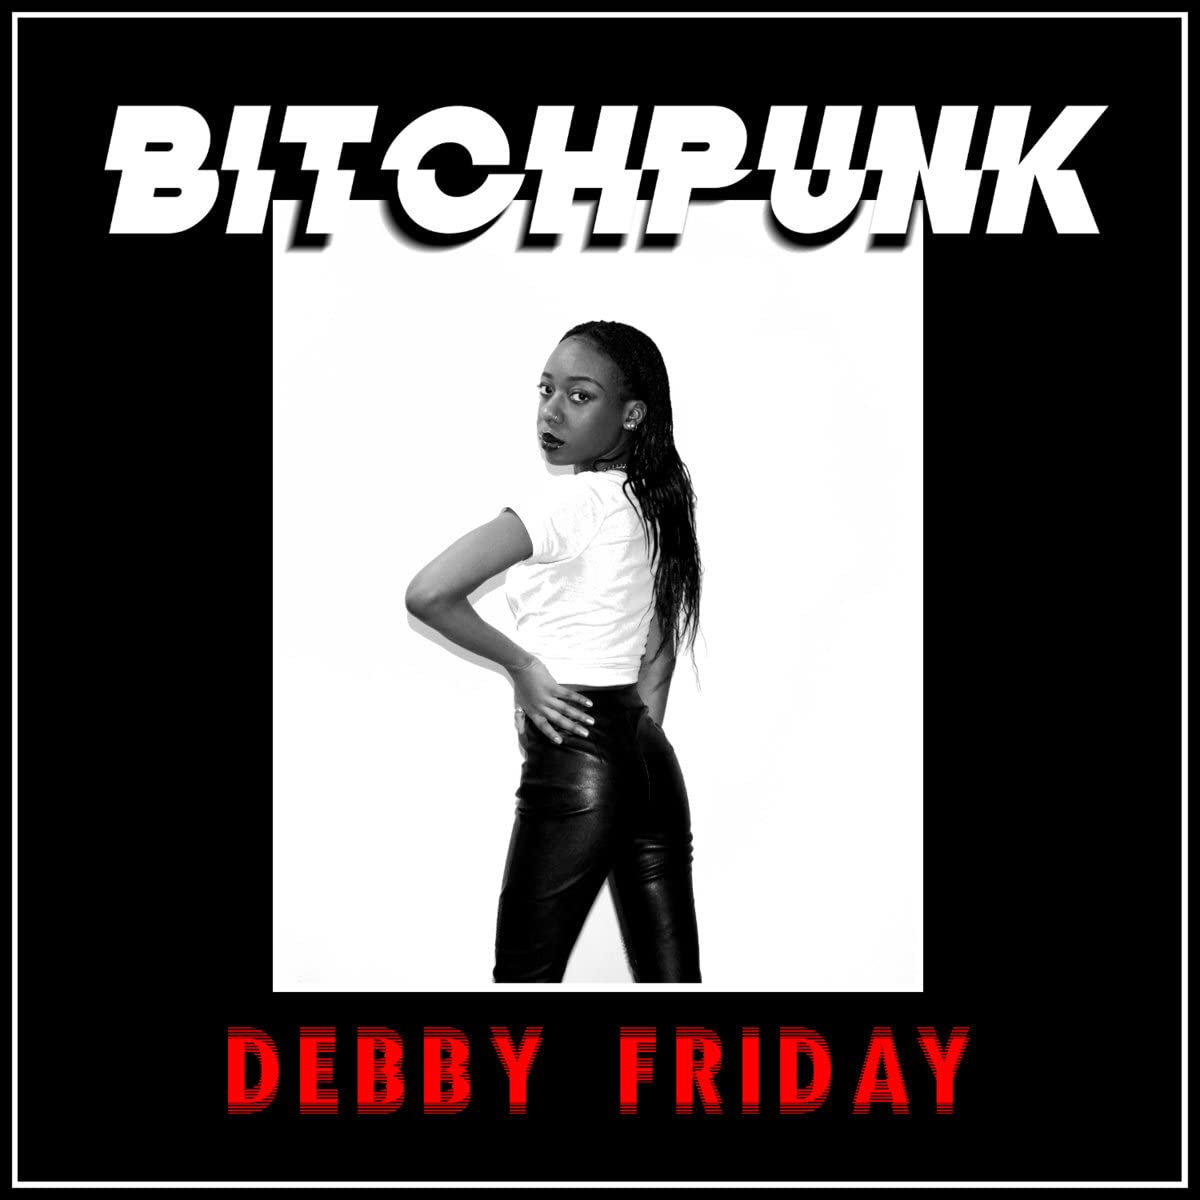 Vinile Debby Friday - Bitchpunk / Death Drive NUOVO SIGILLATO, EDIZIONE DEL 05/05/2023 SUBITO DISPONIBILE